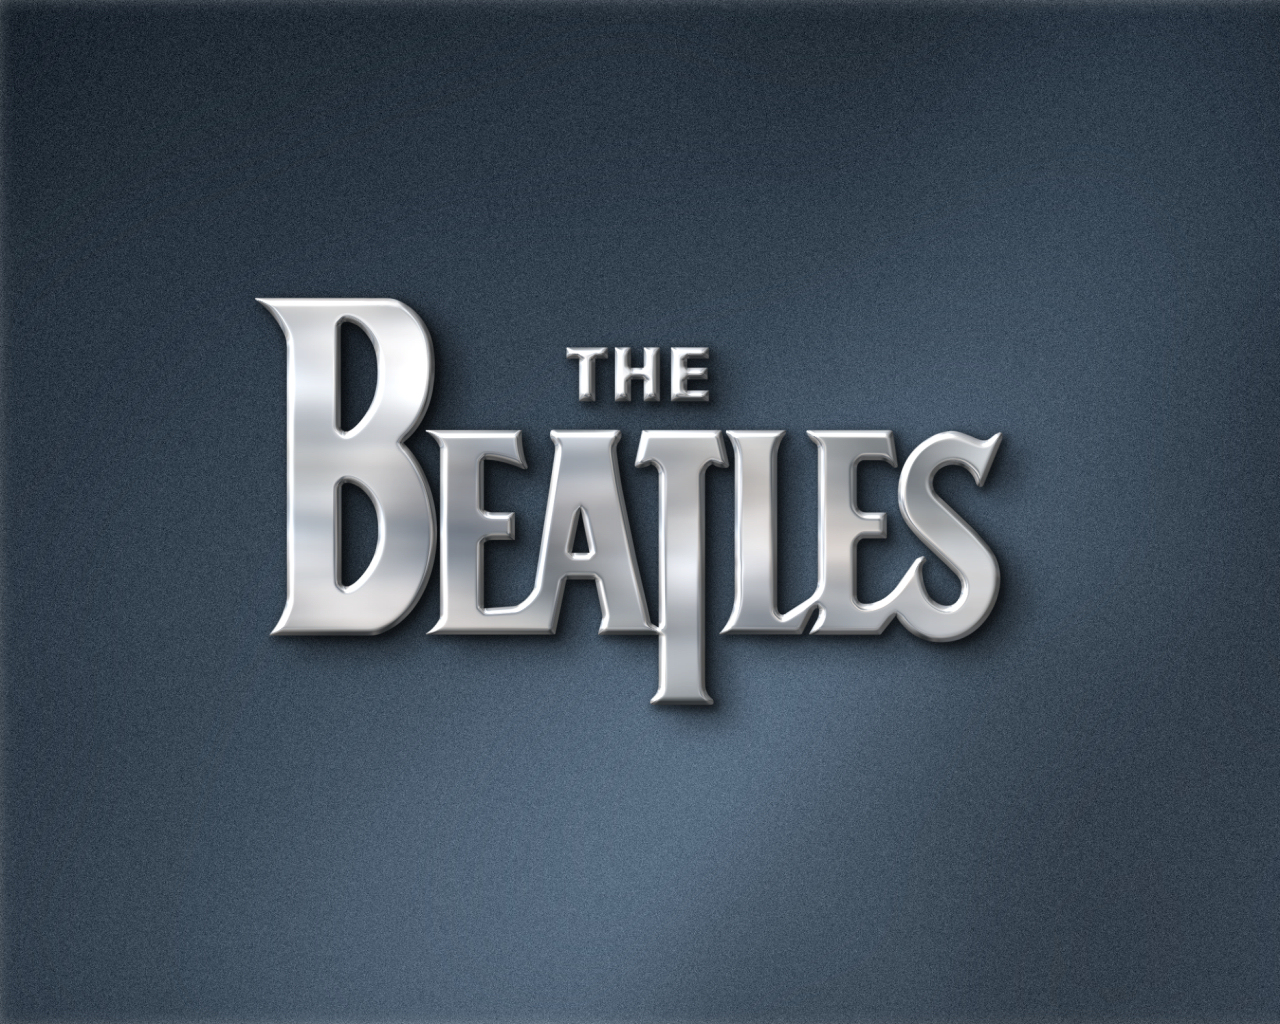 The Beatles Computer Wallpapers Desktop Backgrounds 1280x1024 ID